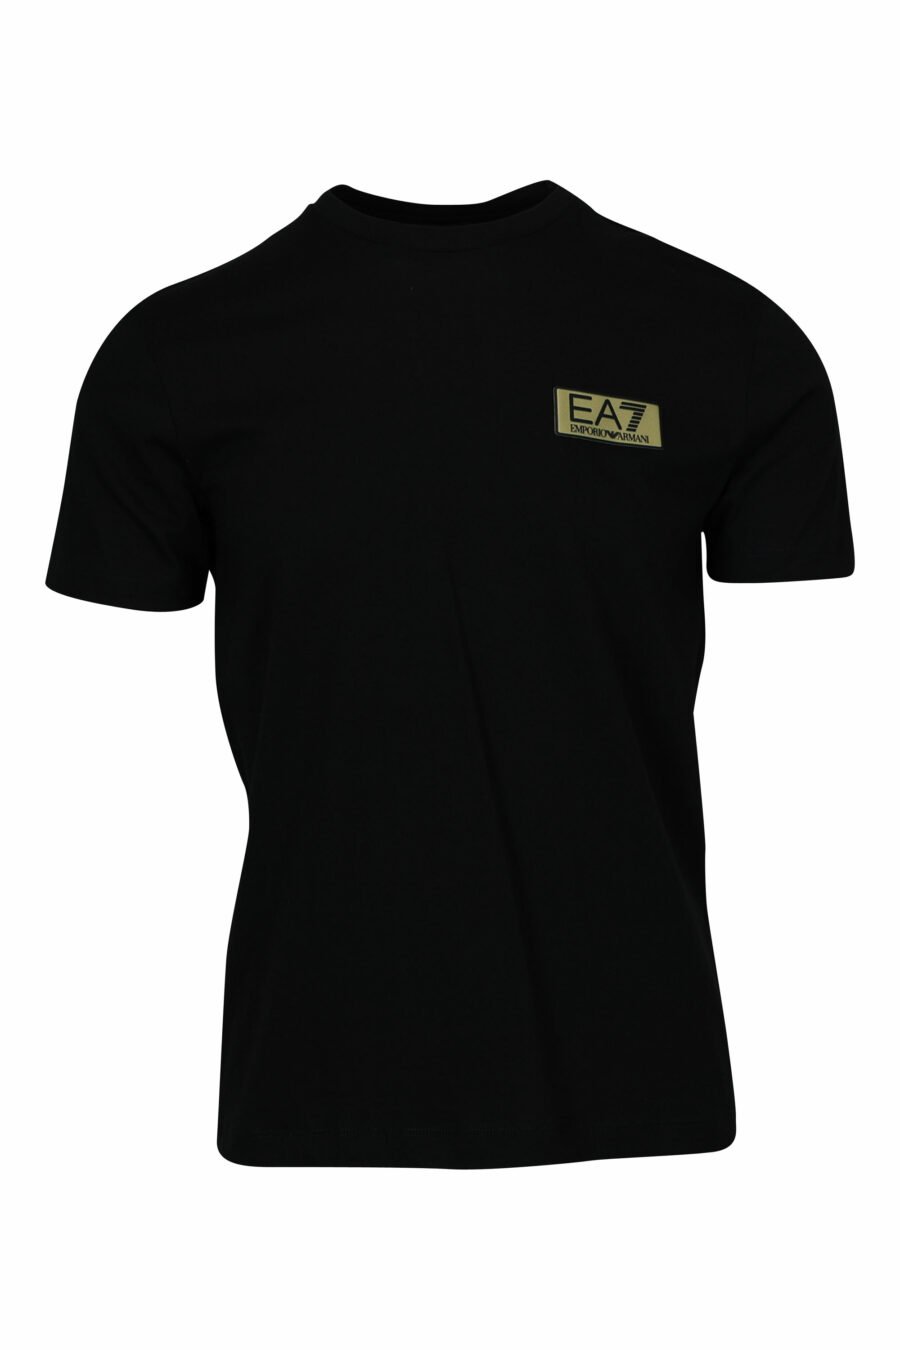 Schwarzes T-Shirt mit schwarzem Minilogo "lux identity" auf Goldplatte - 8058947471980